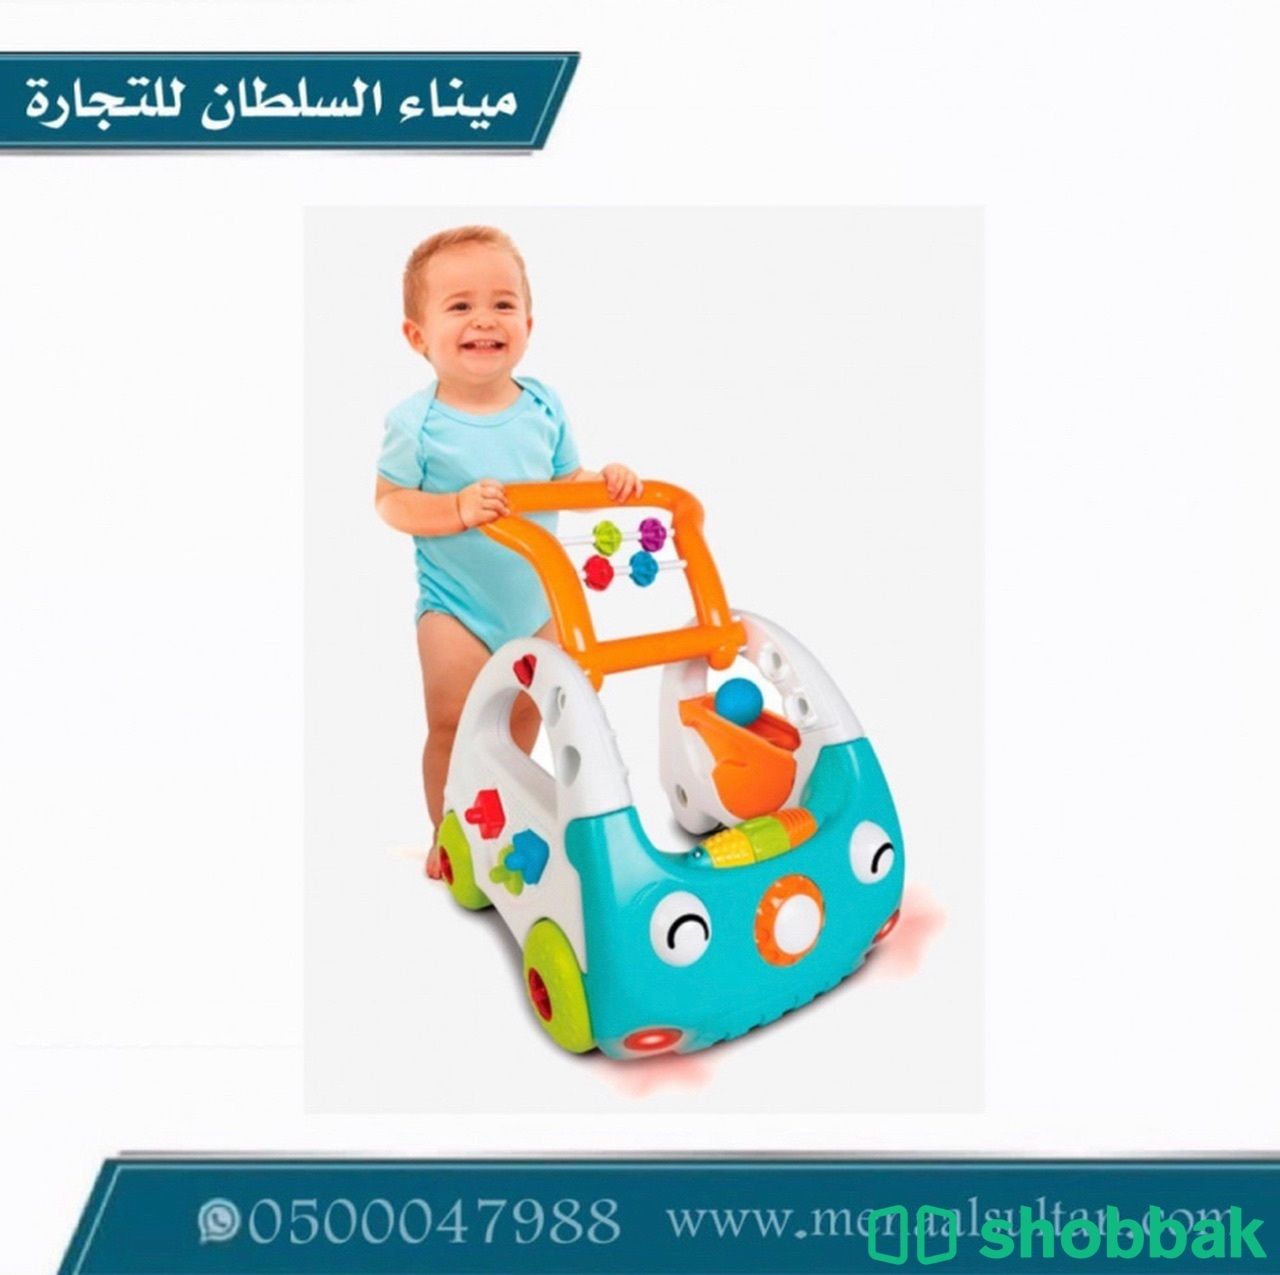 مشاية اطفال شكل سيارة 3 ف 1   Shobbak Saudi Arabia